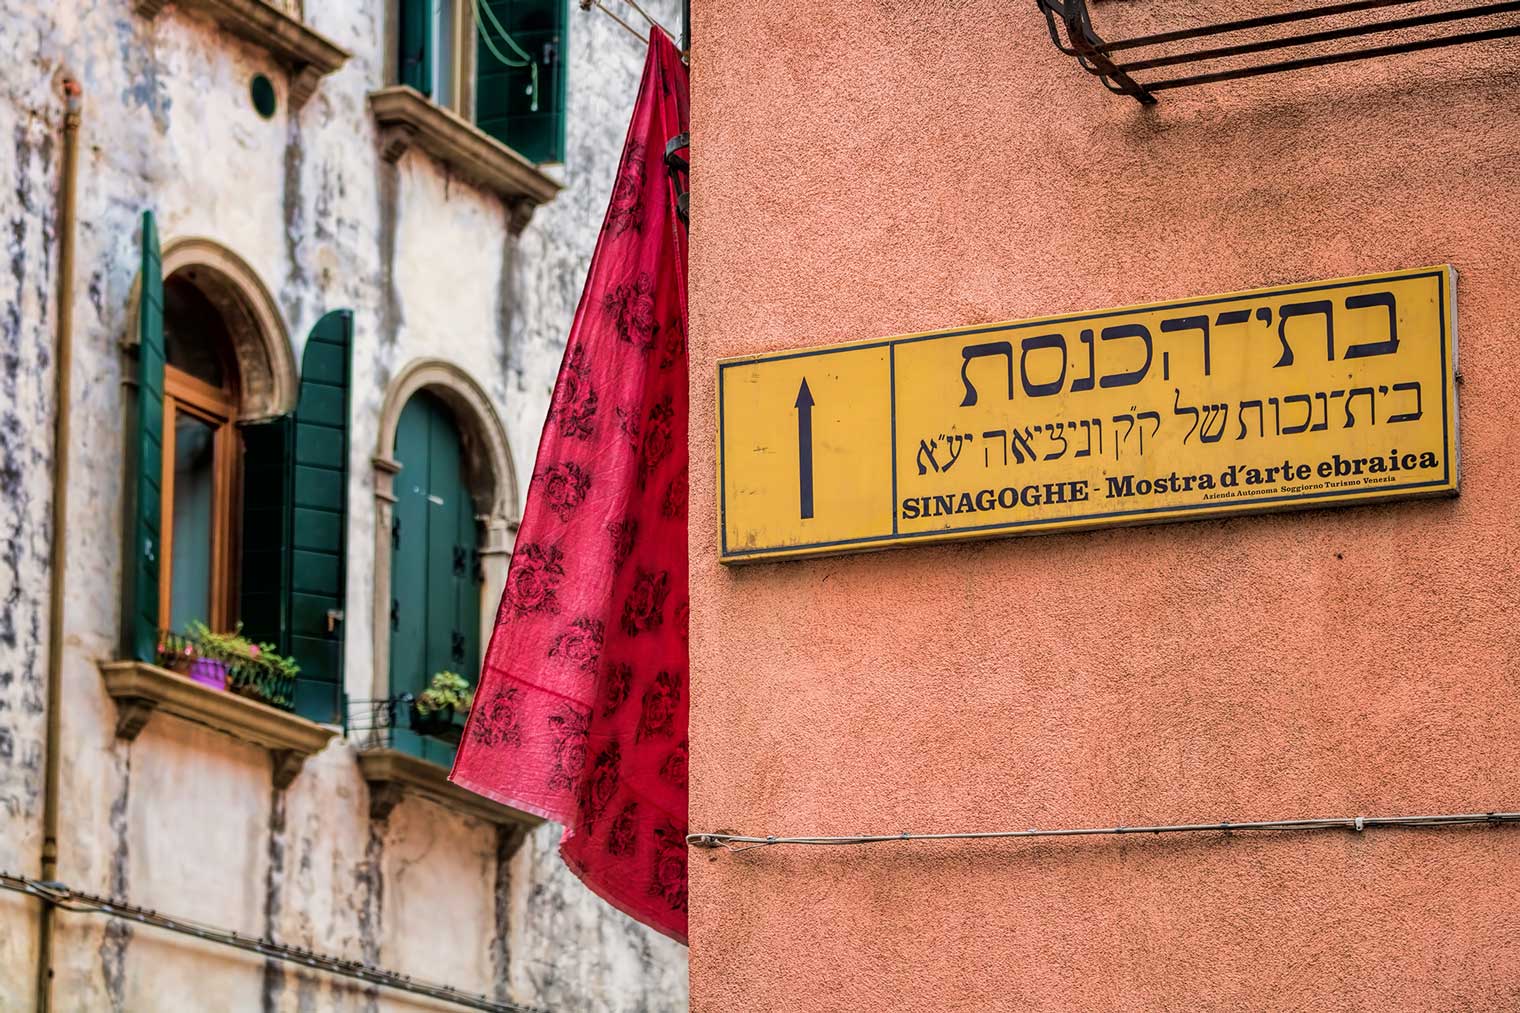 Cannaregio: the Jewish Ghetto